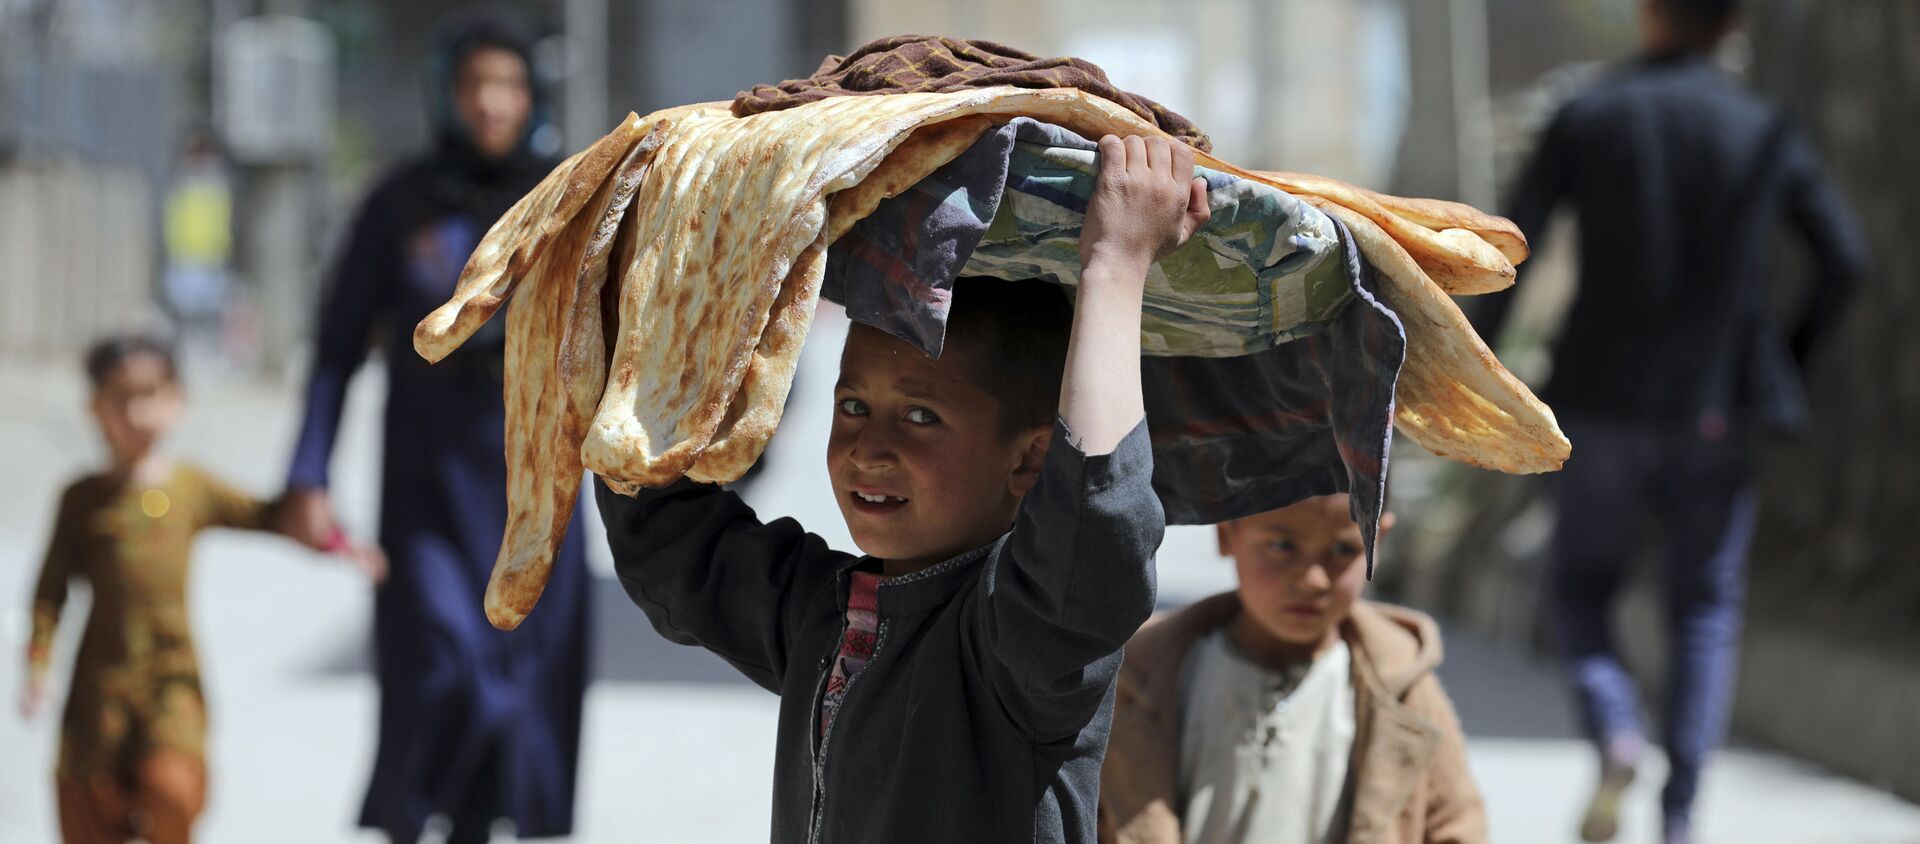 Мальчик с хлебом на голове на одной из улиц Кабула, Афганистан - Sputnik Абхазия, 1920, 08.07.2021